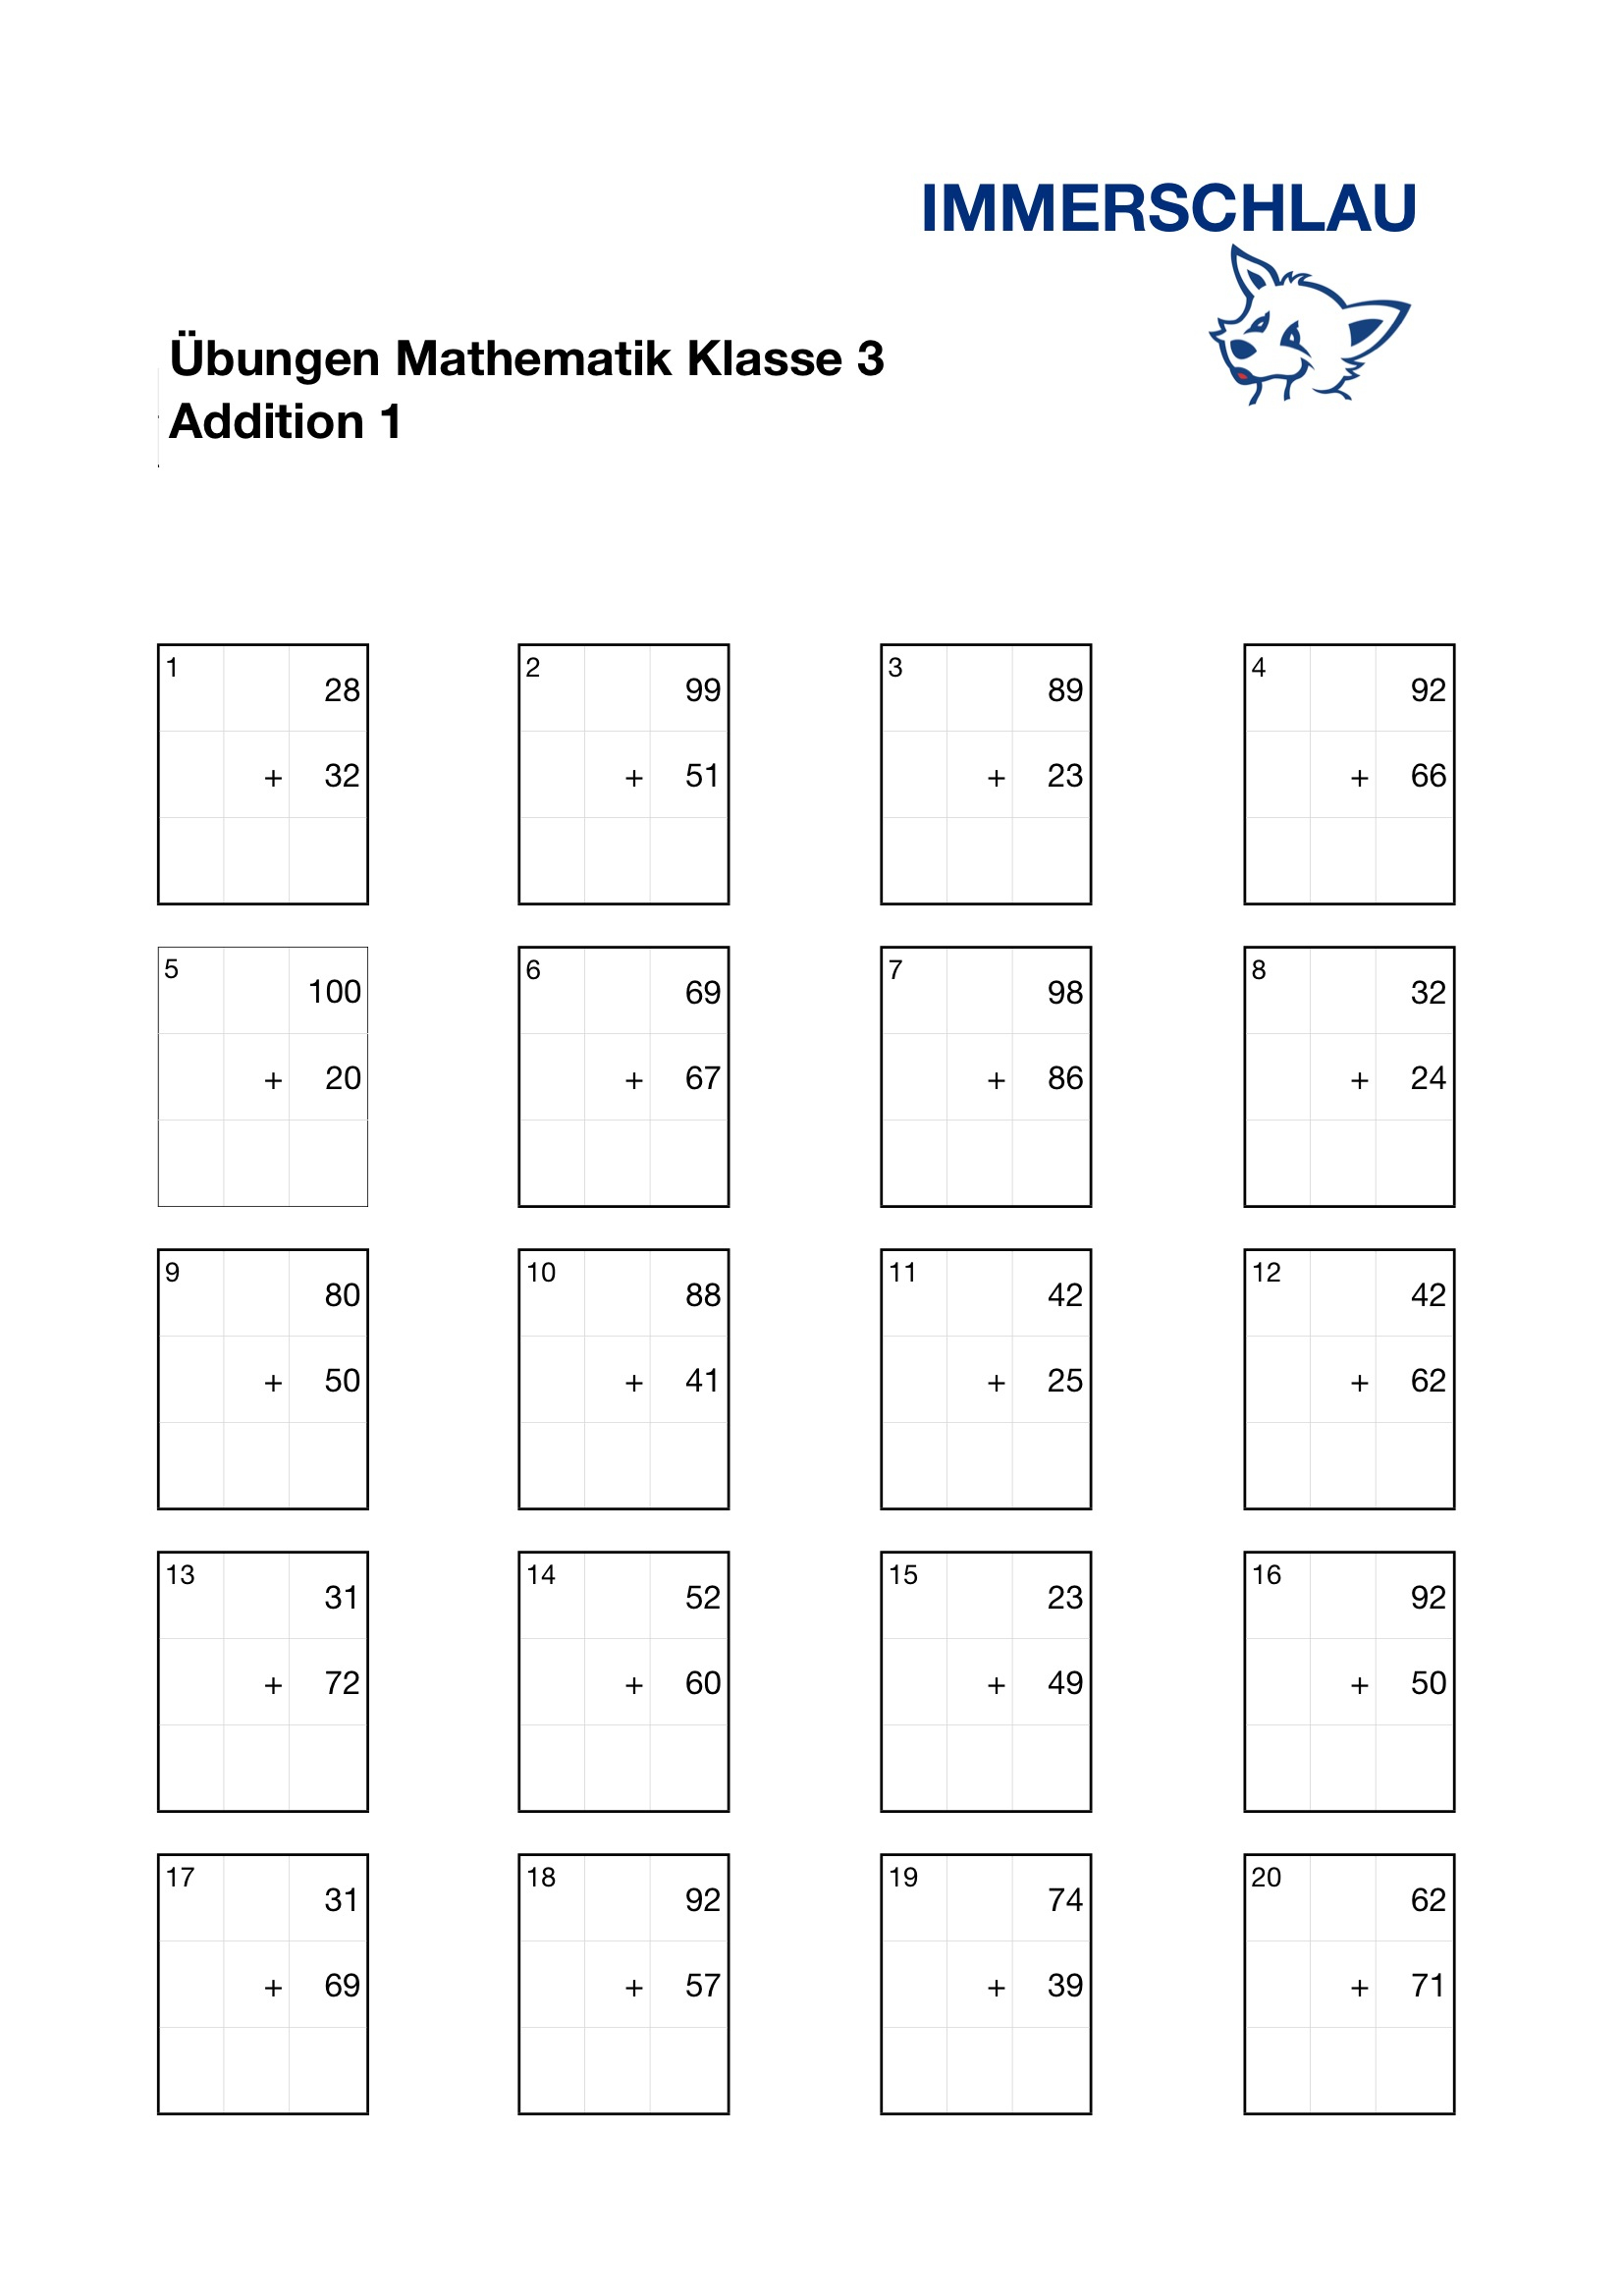 Übungsblätter Mathematik Klasse 3 – Addition – Immerschlau innen Übungsblätter Mathe